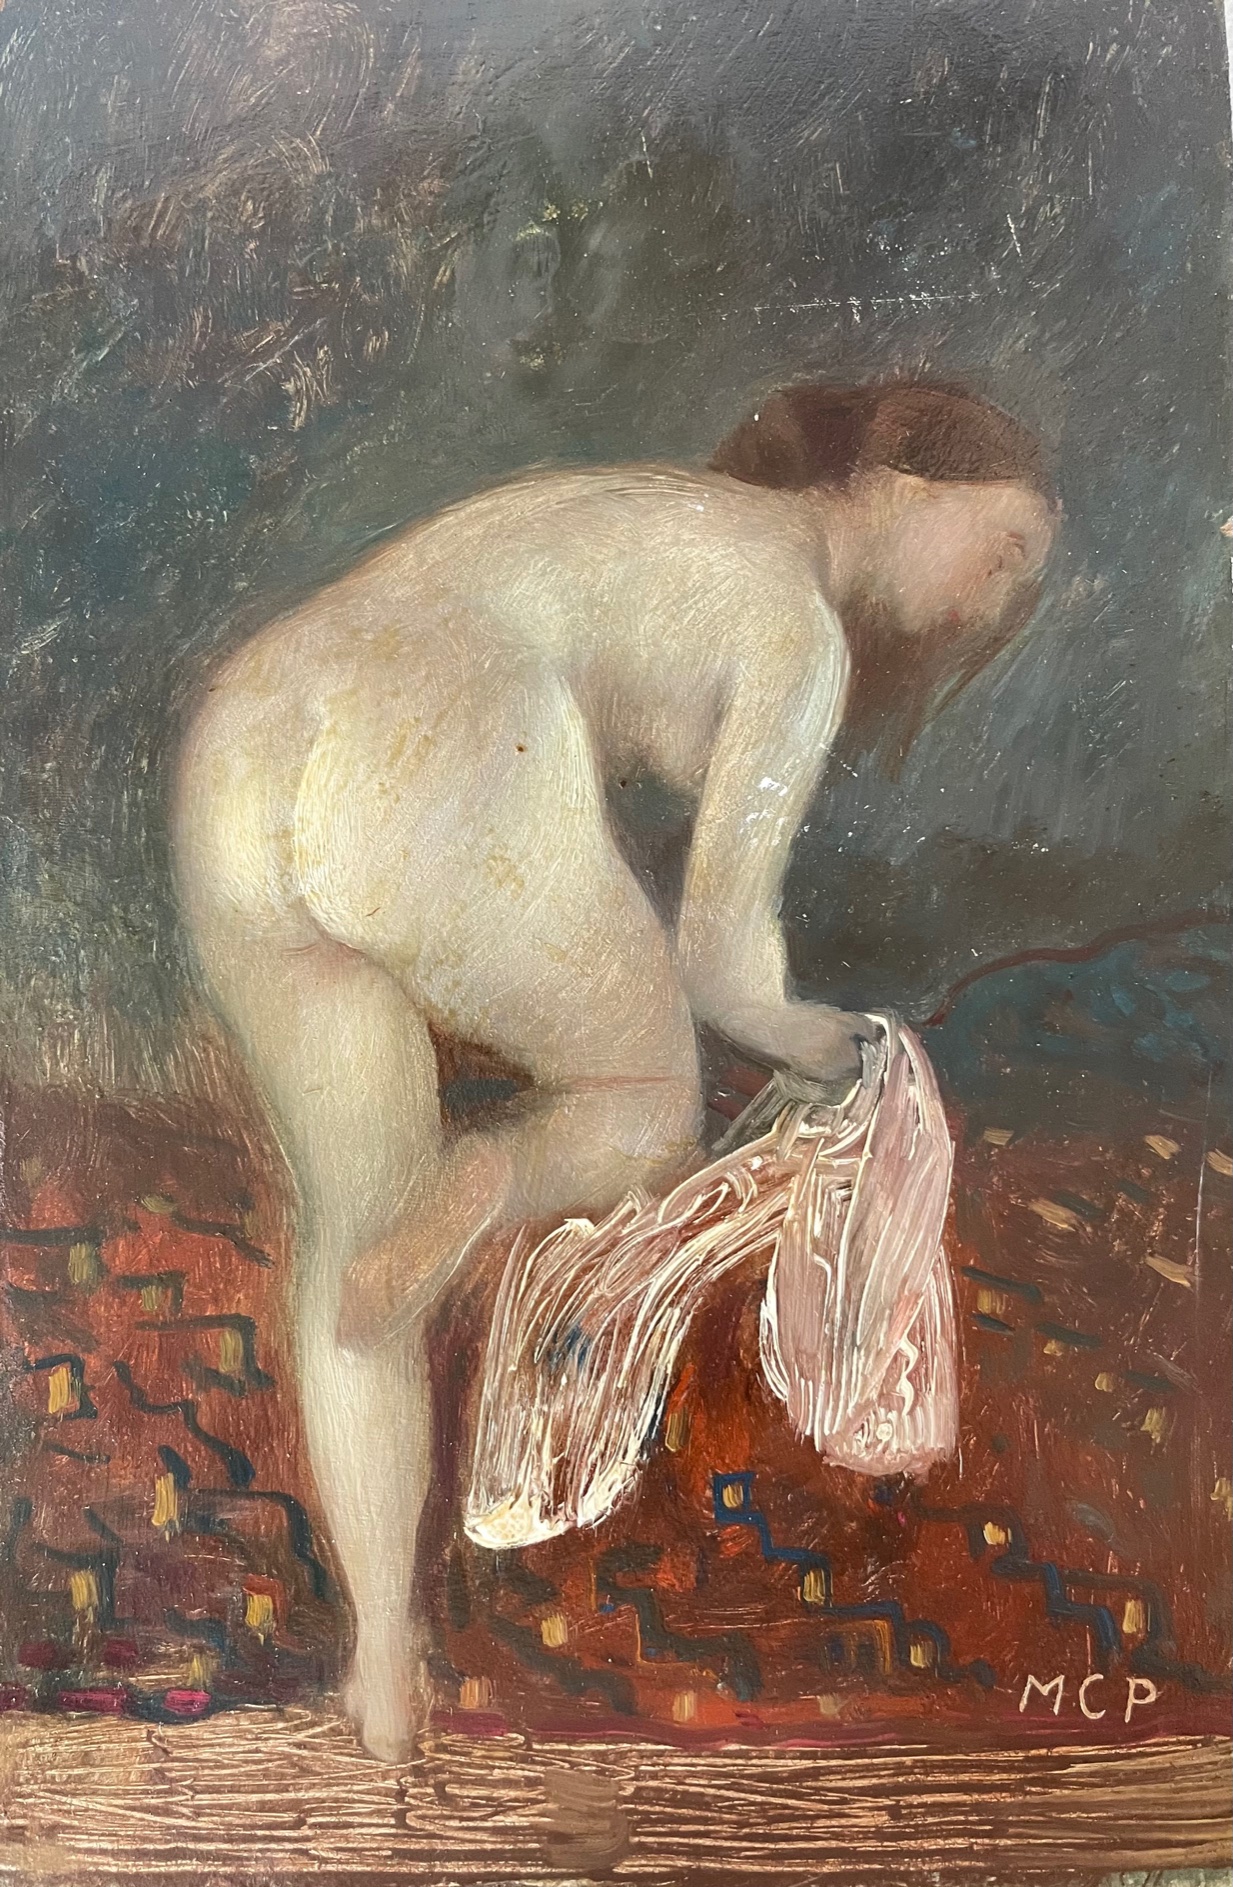 Molnár,  C. Pál: Nude with towel